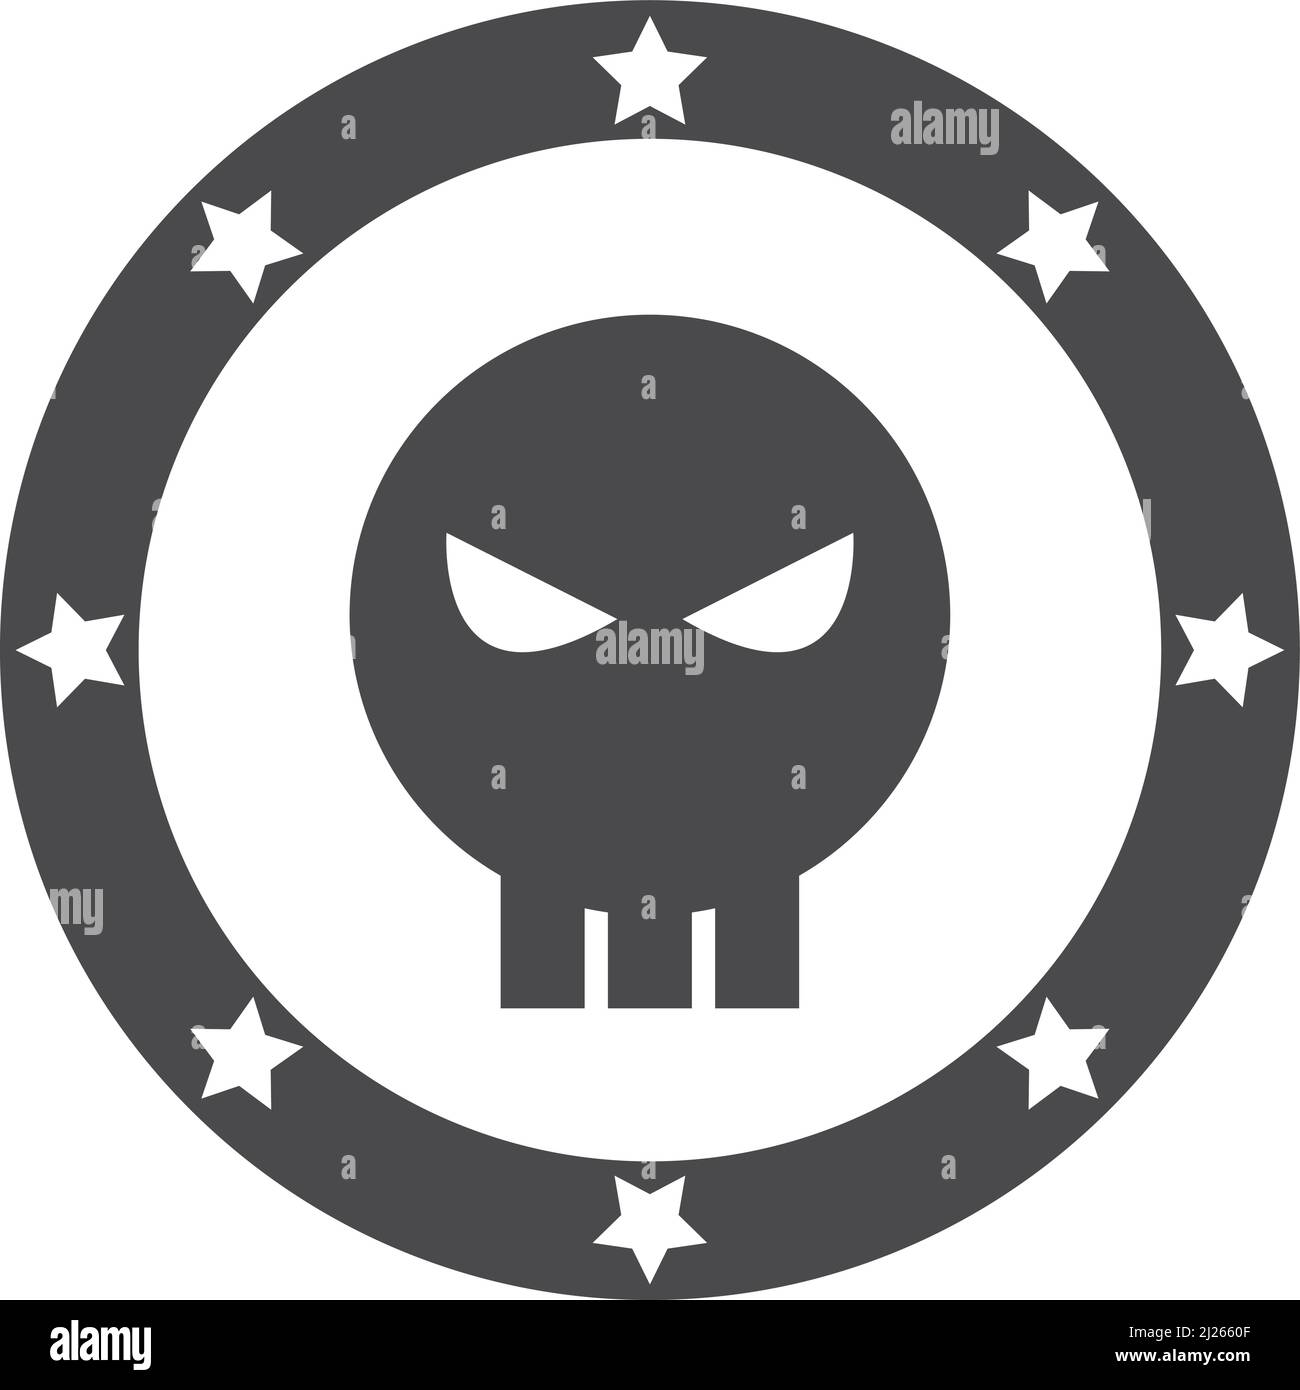 Evil comic emblem. Super villain black sign Stock Vector